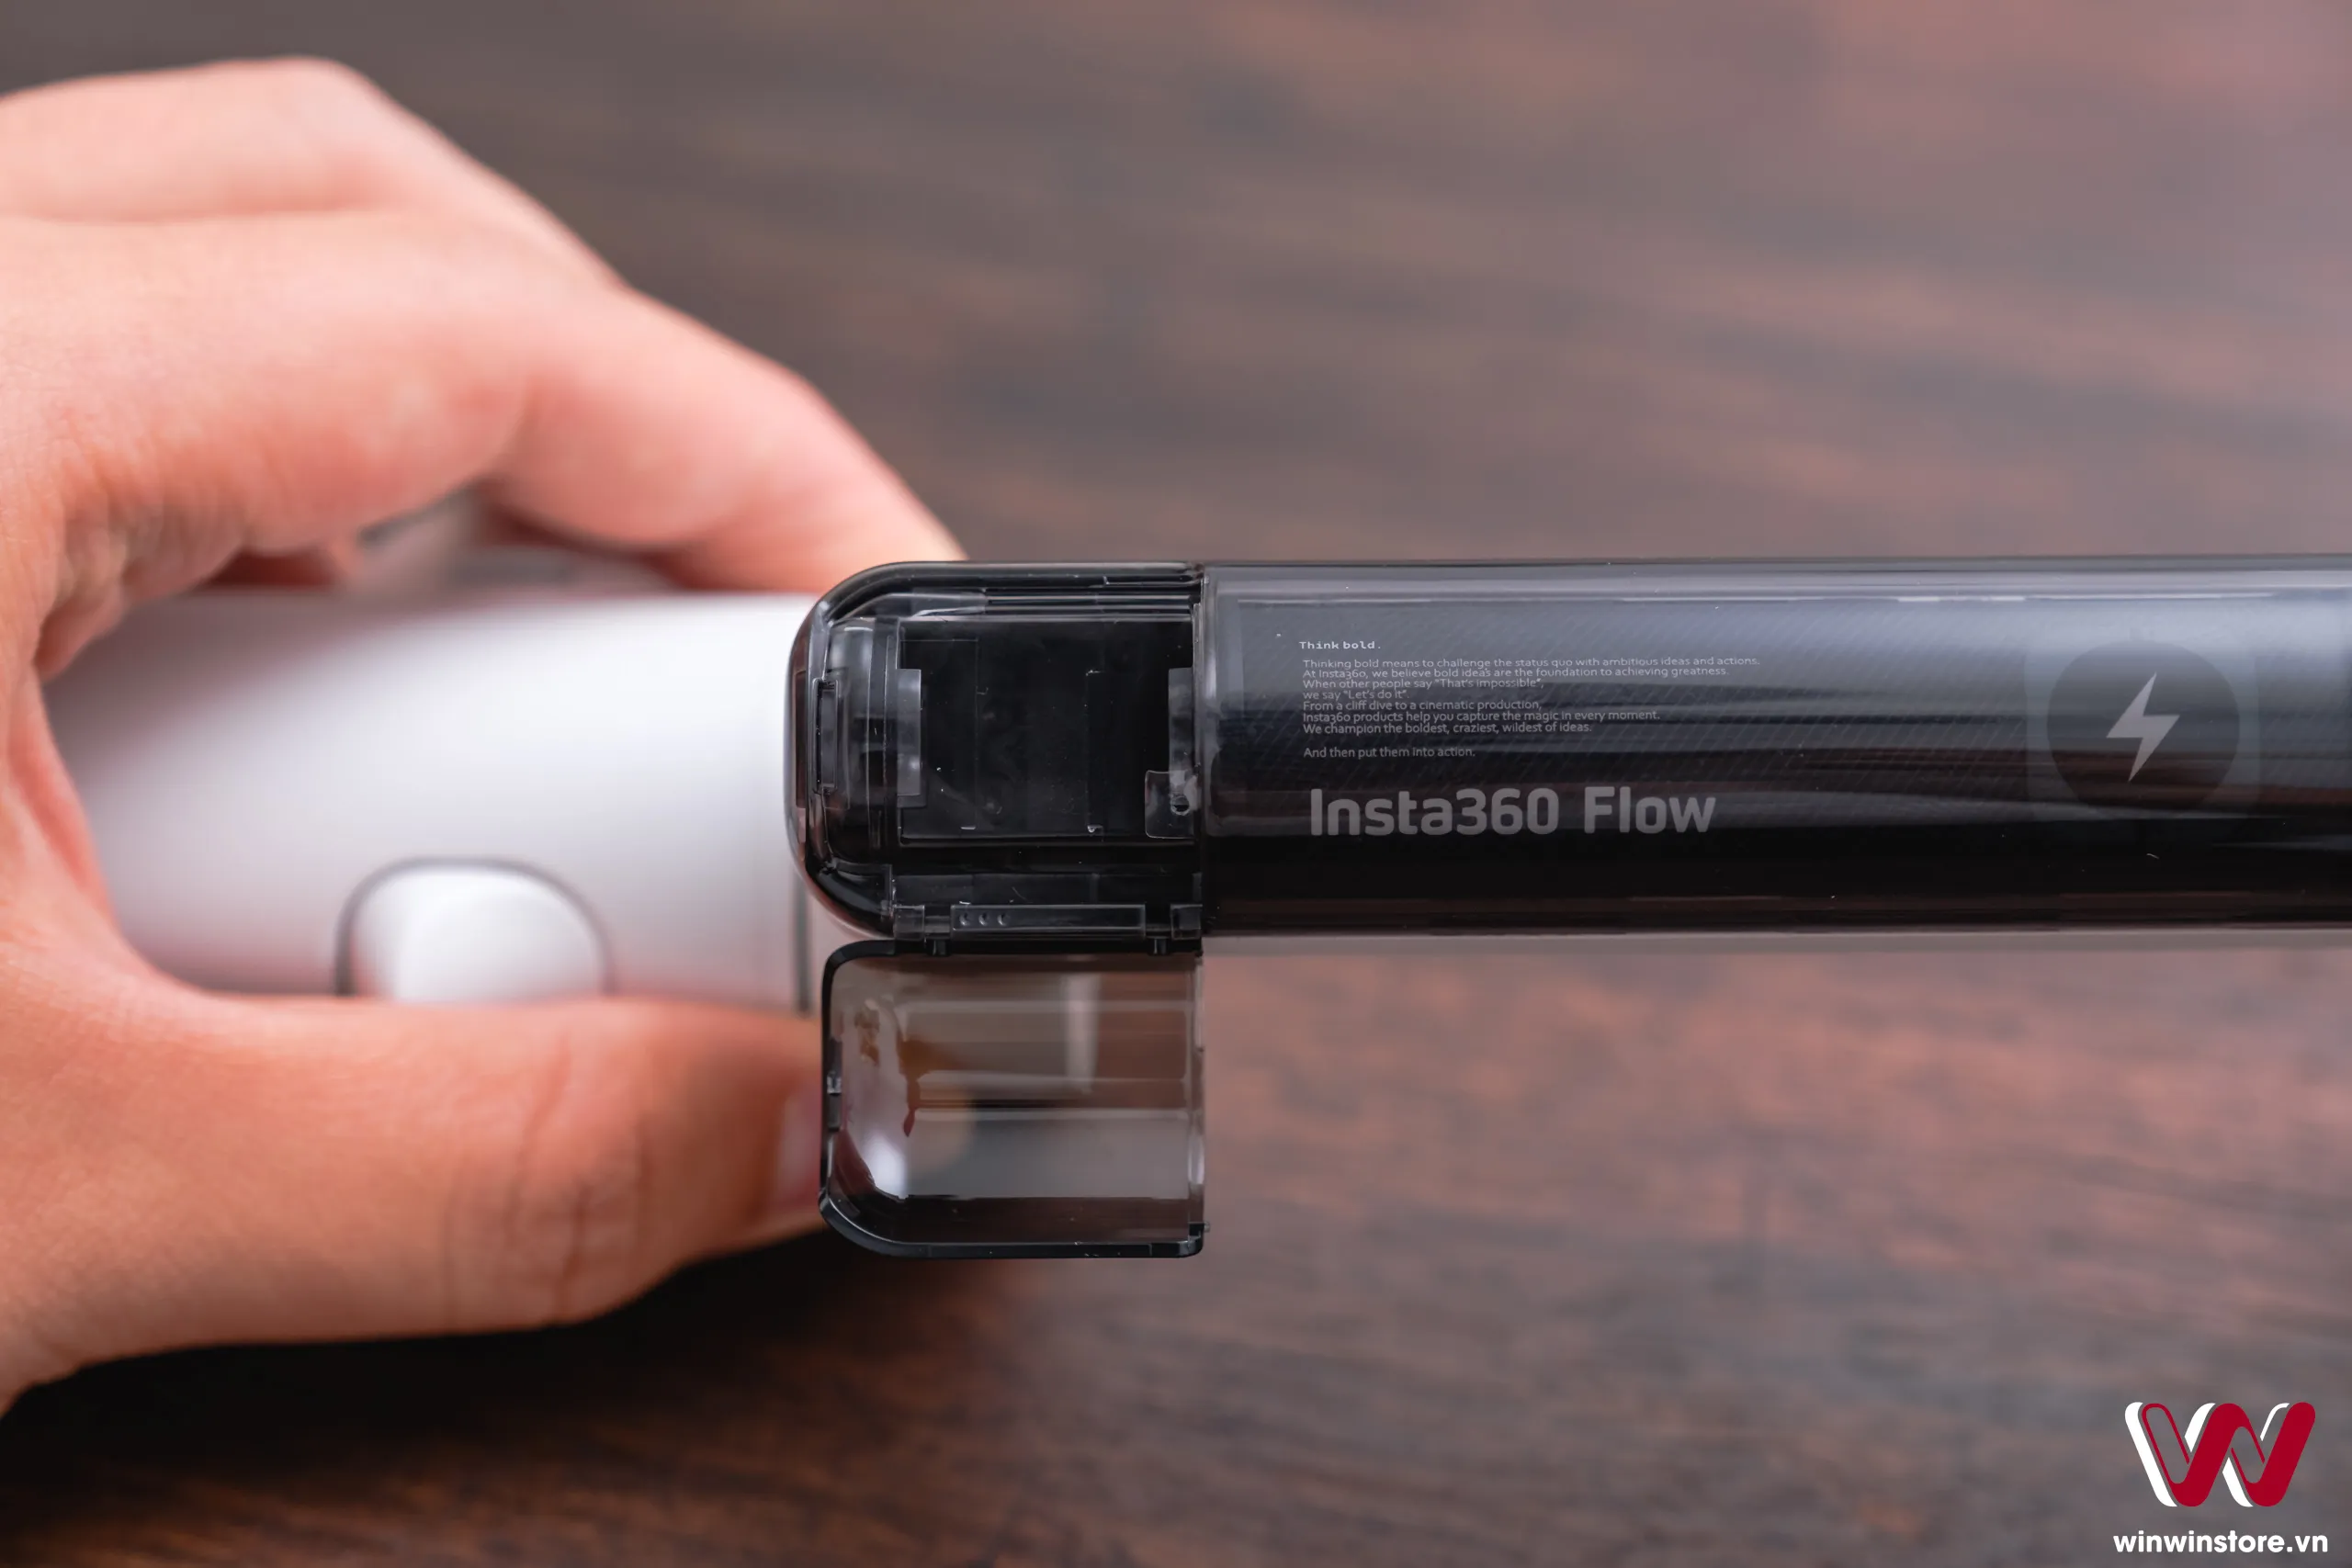 Trên tay gimbal Insta360 Flow: Nhỏ gọn, tiện lợi, tracking tốt, ứng dụng xịn